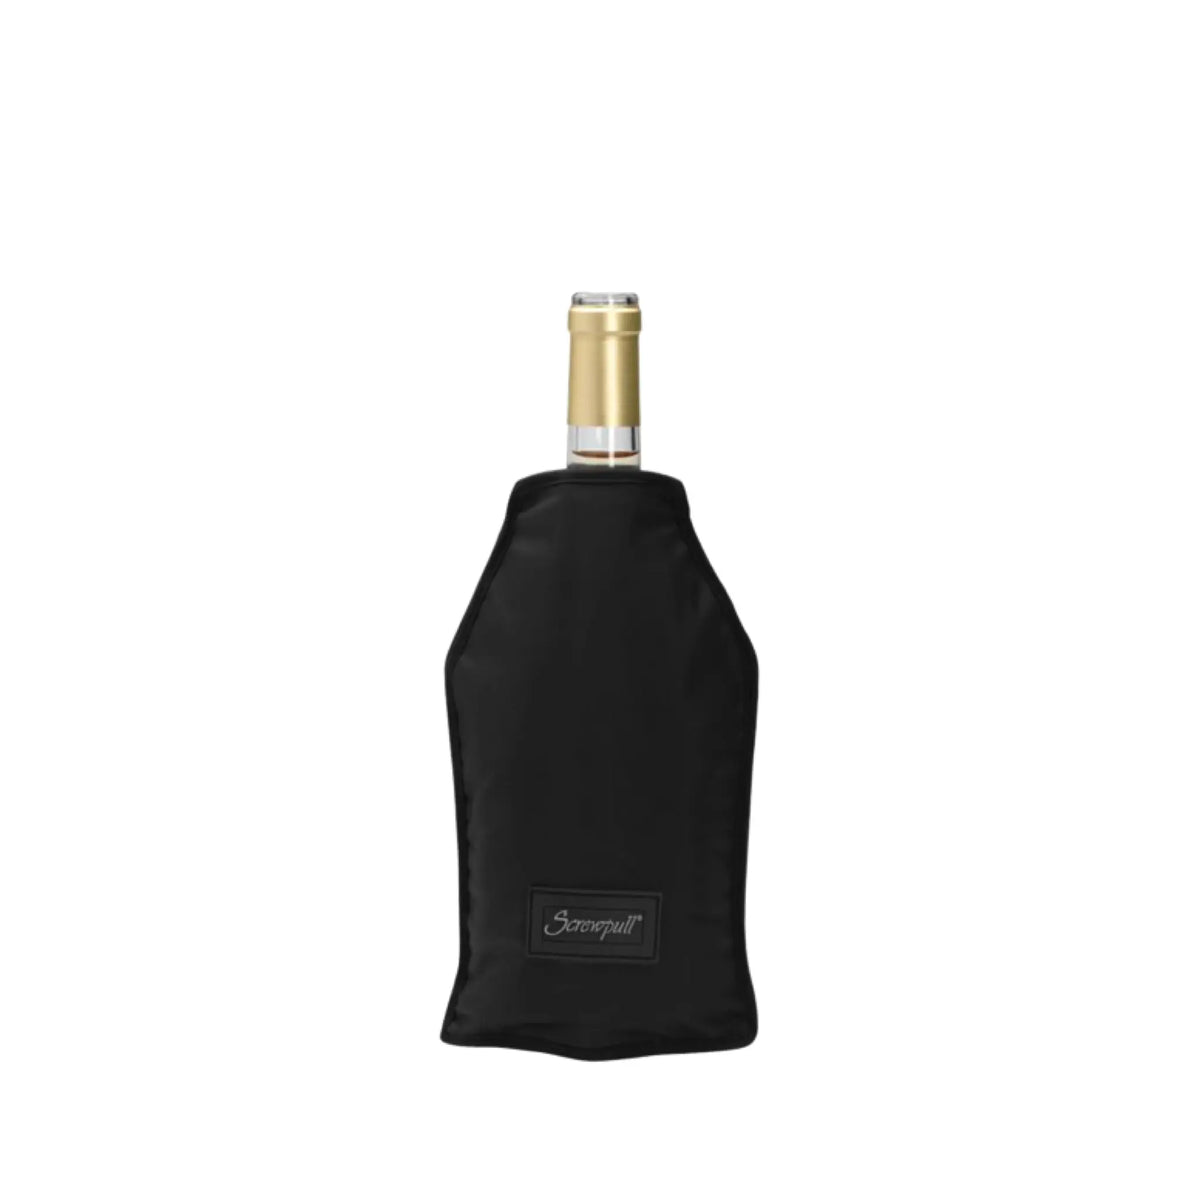 Screwpull--Gläser & Accessoires-SCREWPULL Flaschenkühler »WA-126« schwarz-WINECOM